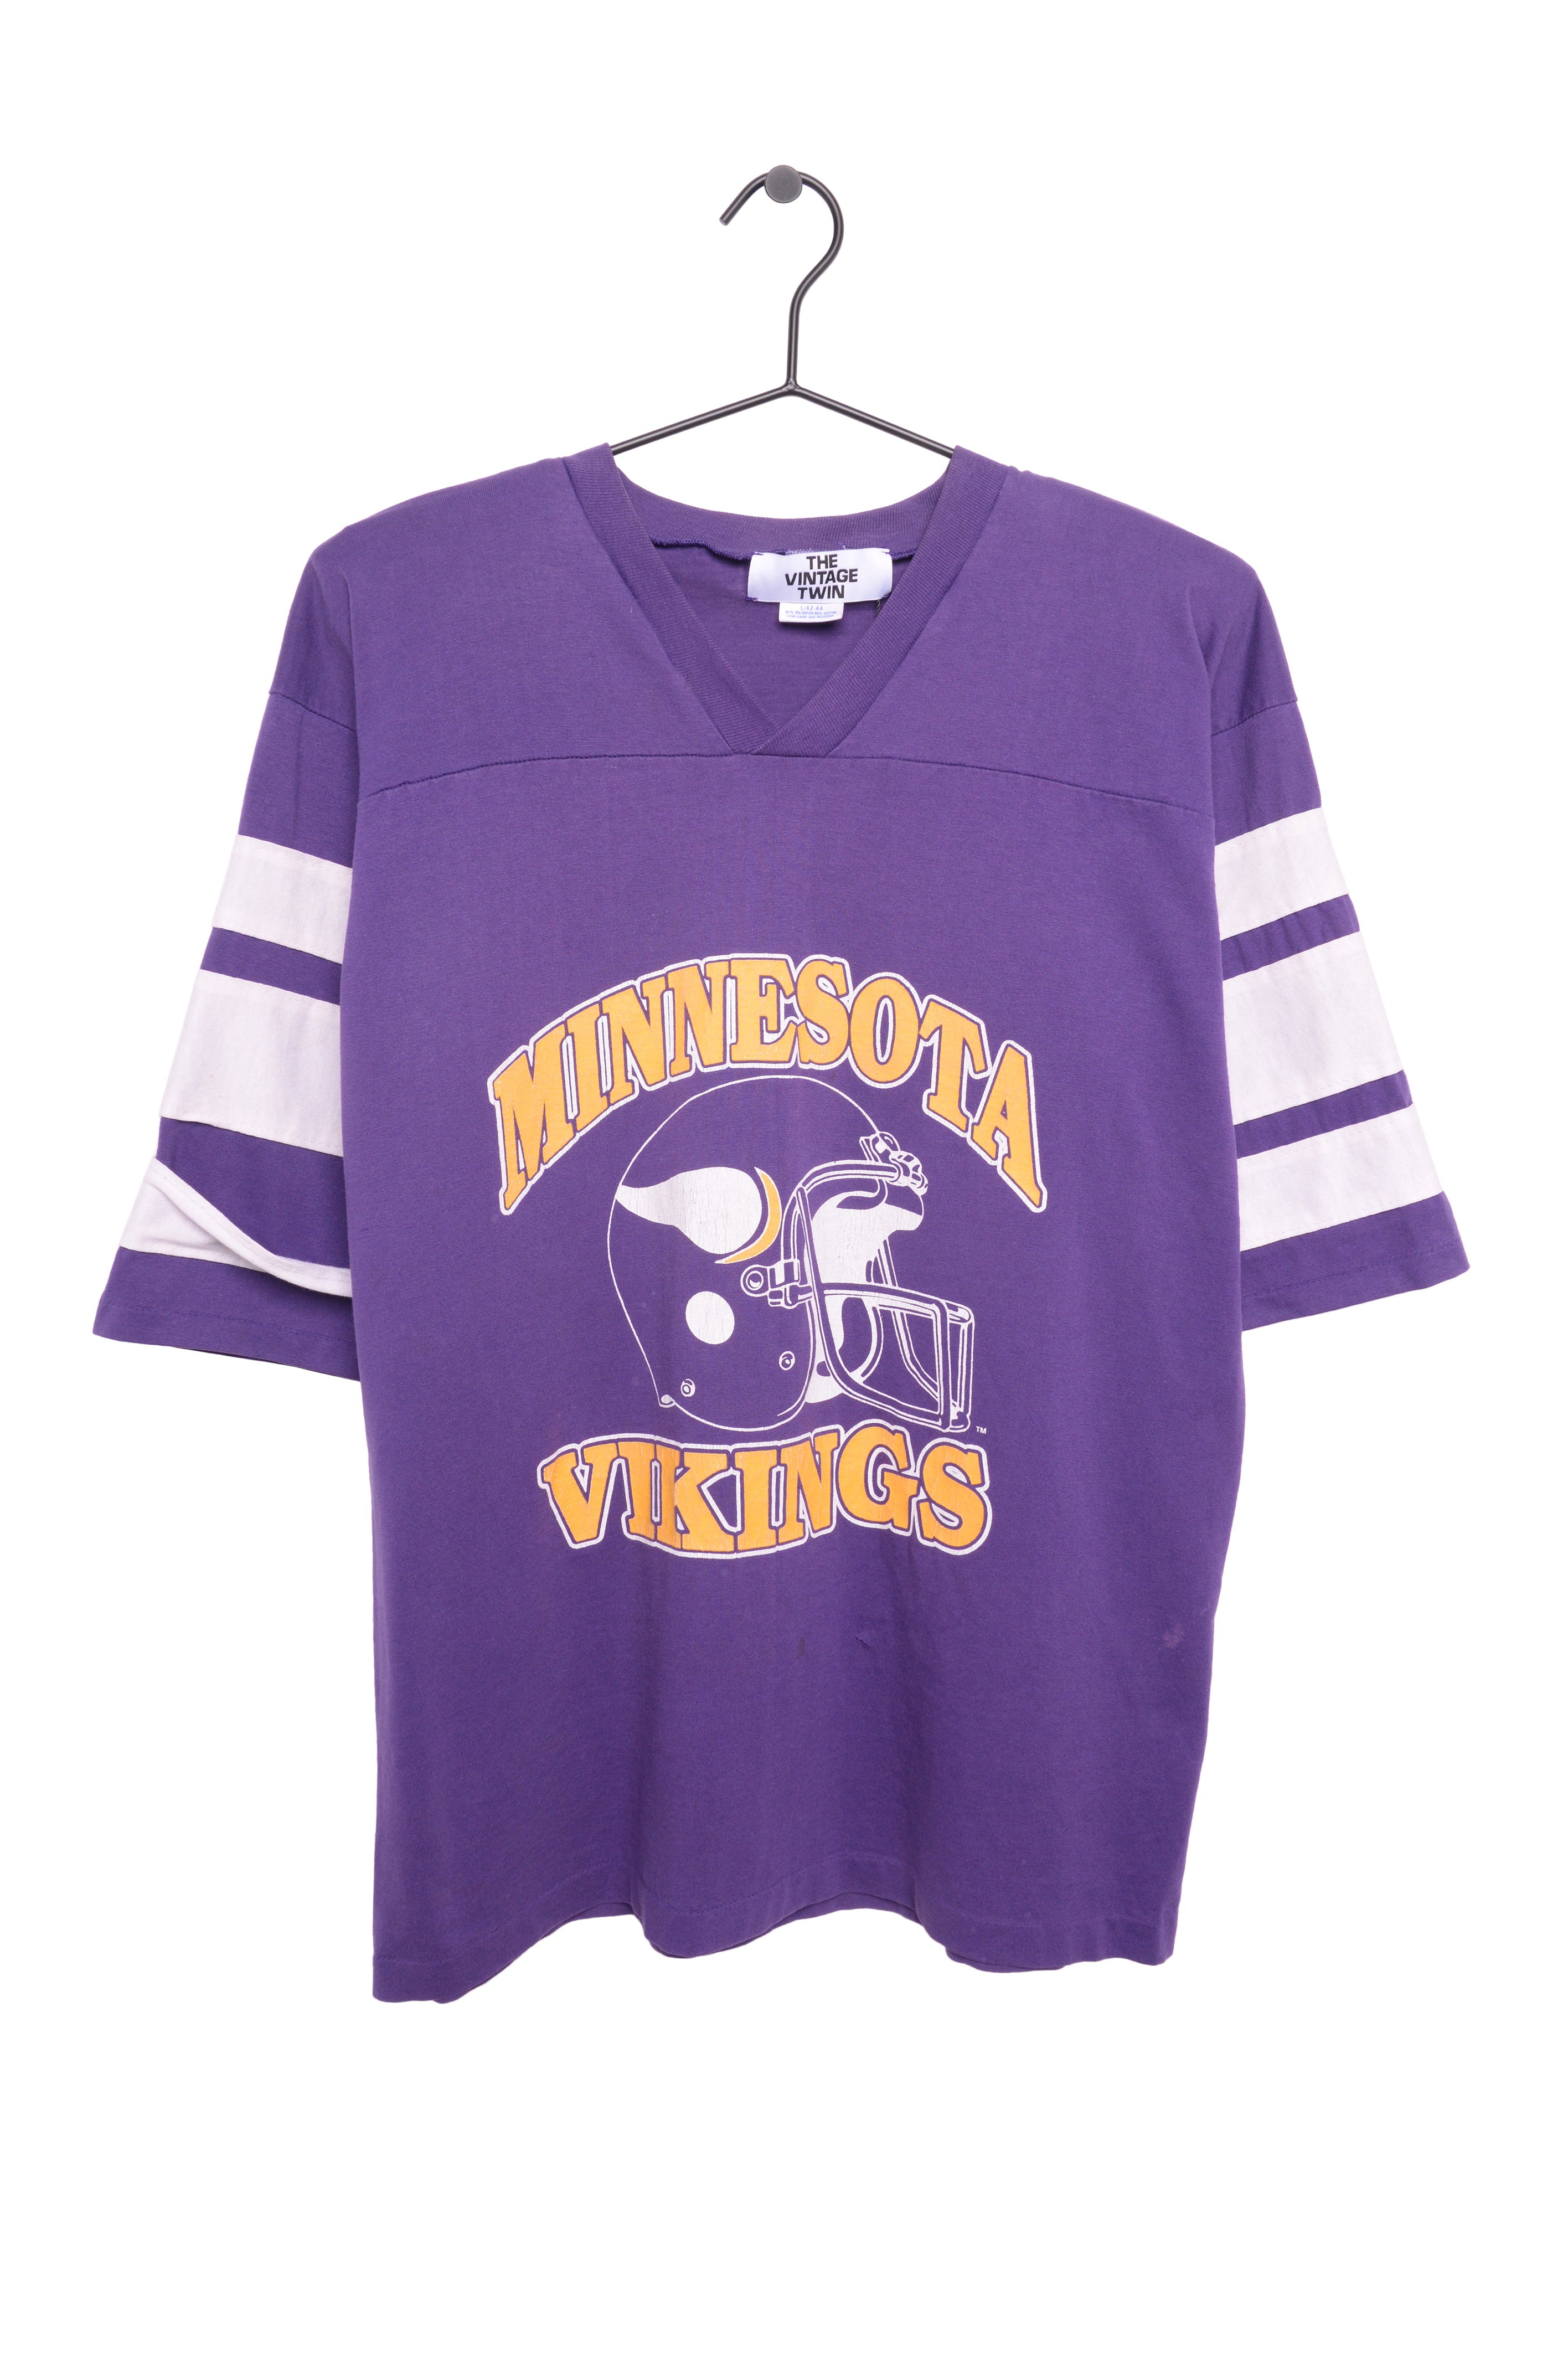 Unisex Vintage Minnesota Vikings Jersey Tee USA - The Vintage Twin